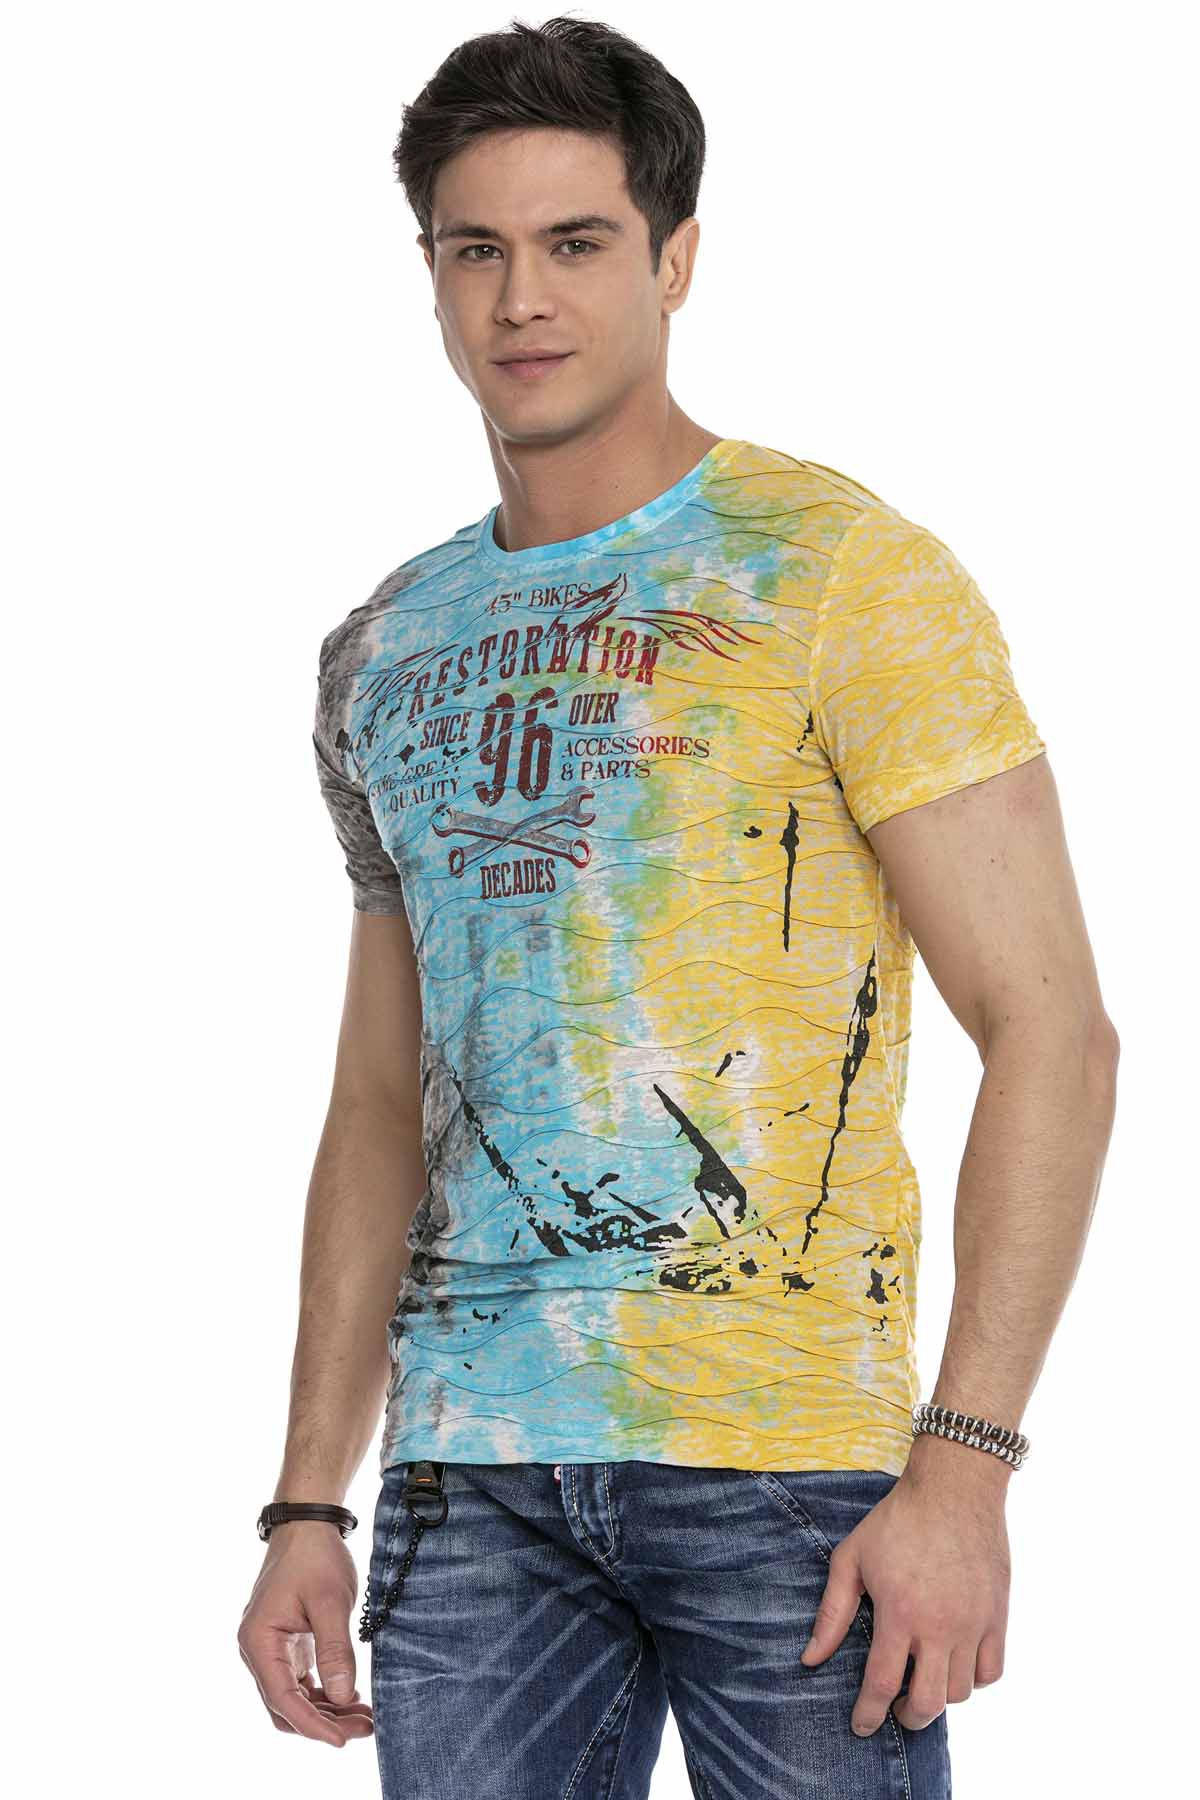 Cipo &amp; Baxx PERU Men's T-Shirt CT619